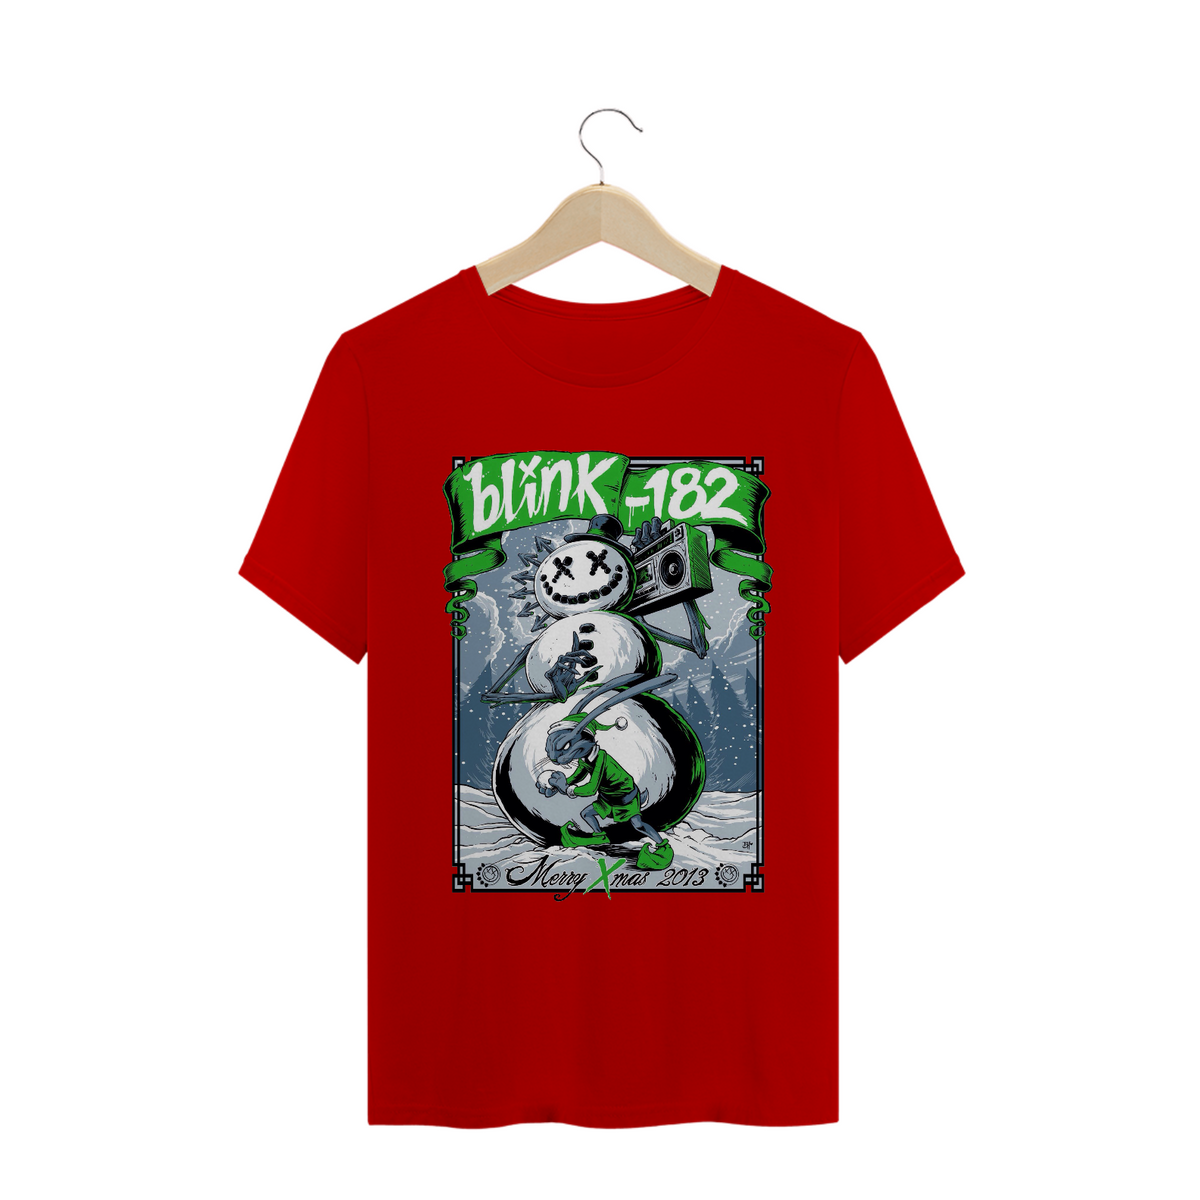 Nome do produto: Camisa Blink-182 - Xmas 2013